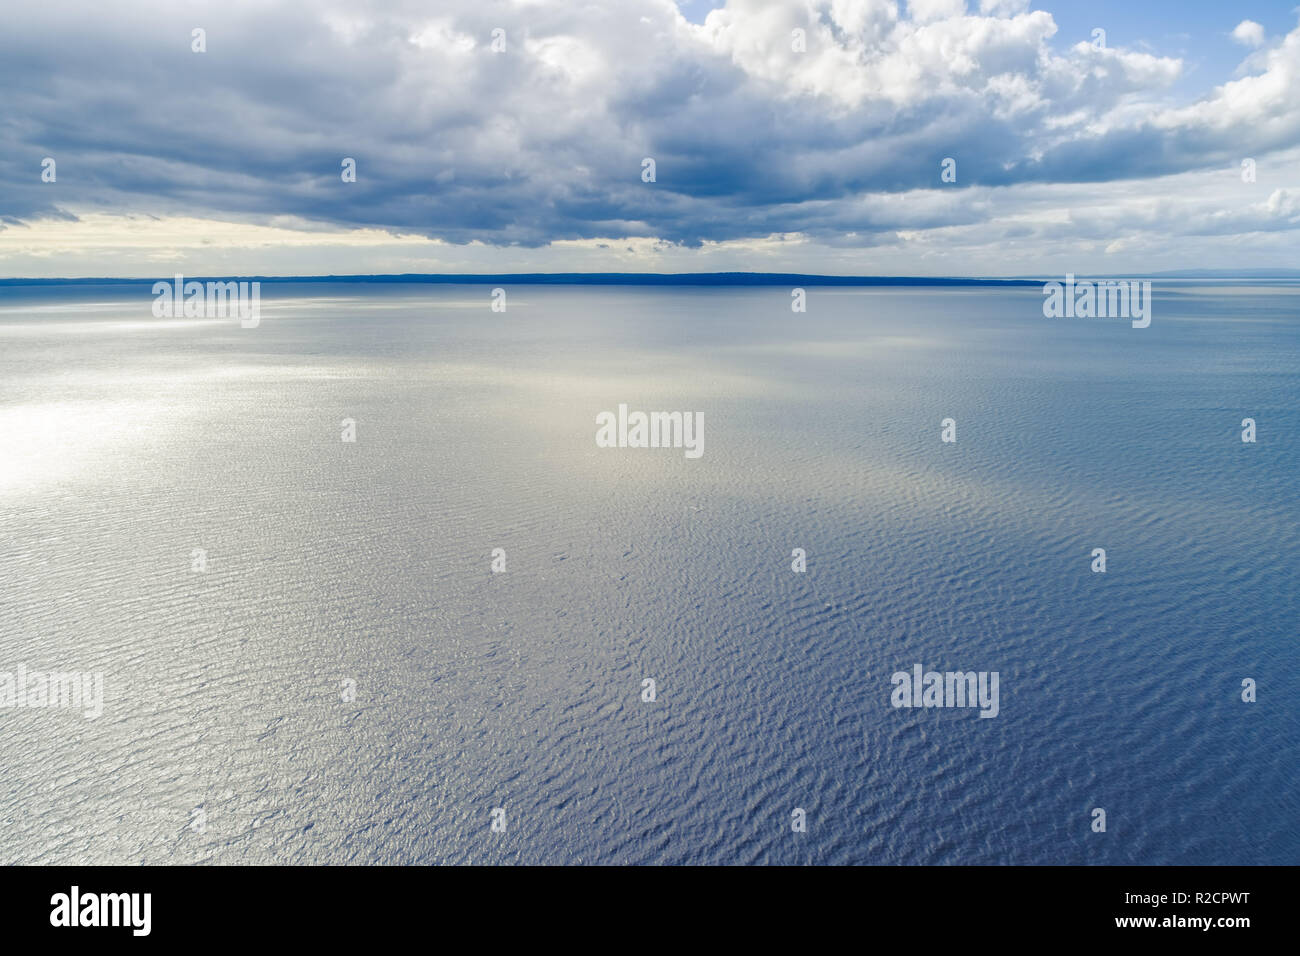 Kleine Flecken des Landes am Horizont mit Wolken über dem Wasser - Luftbild Landschaft Stockfoto